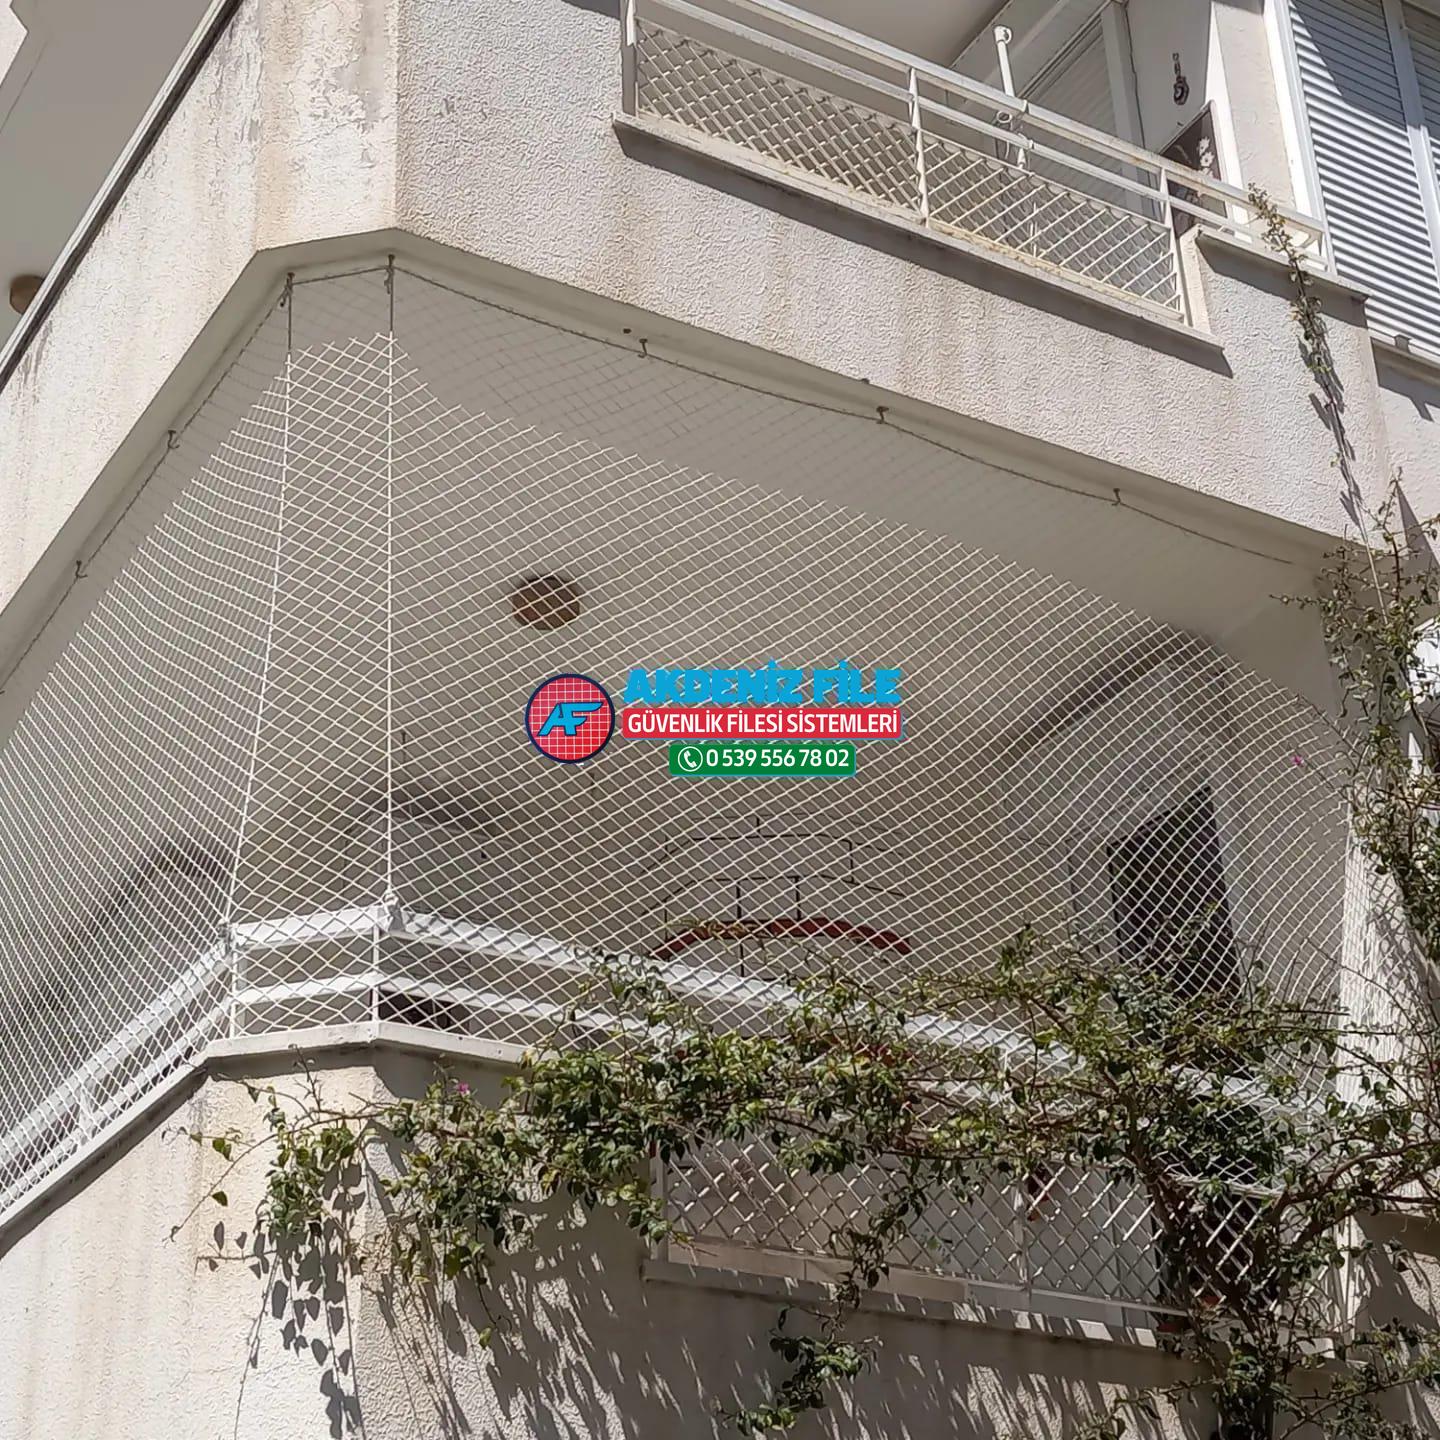 İzmir  Balkon için file, Balkon için güvenlik filesi 0539 556 78 02